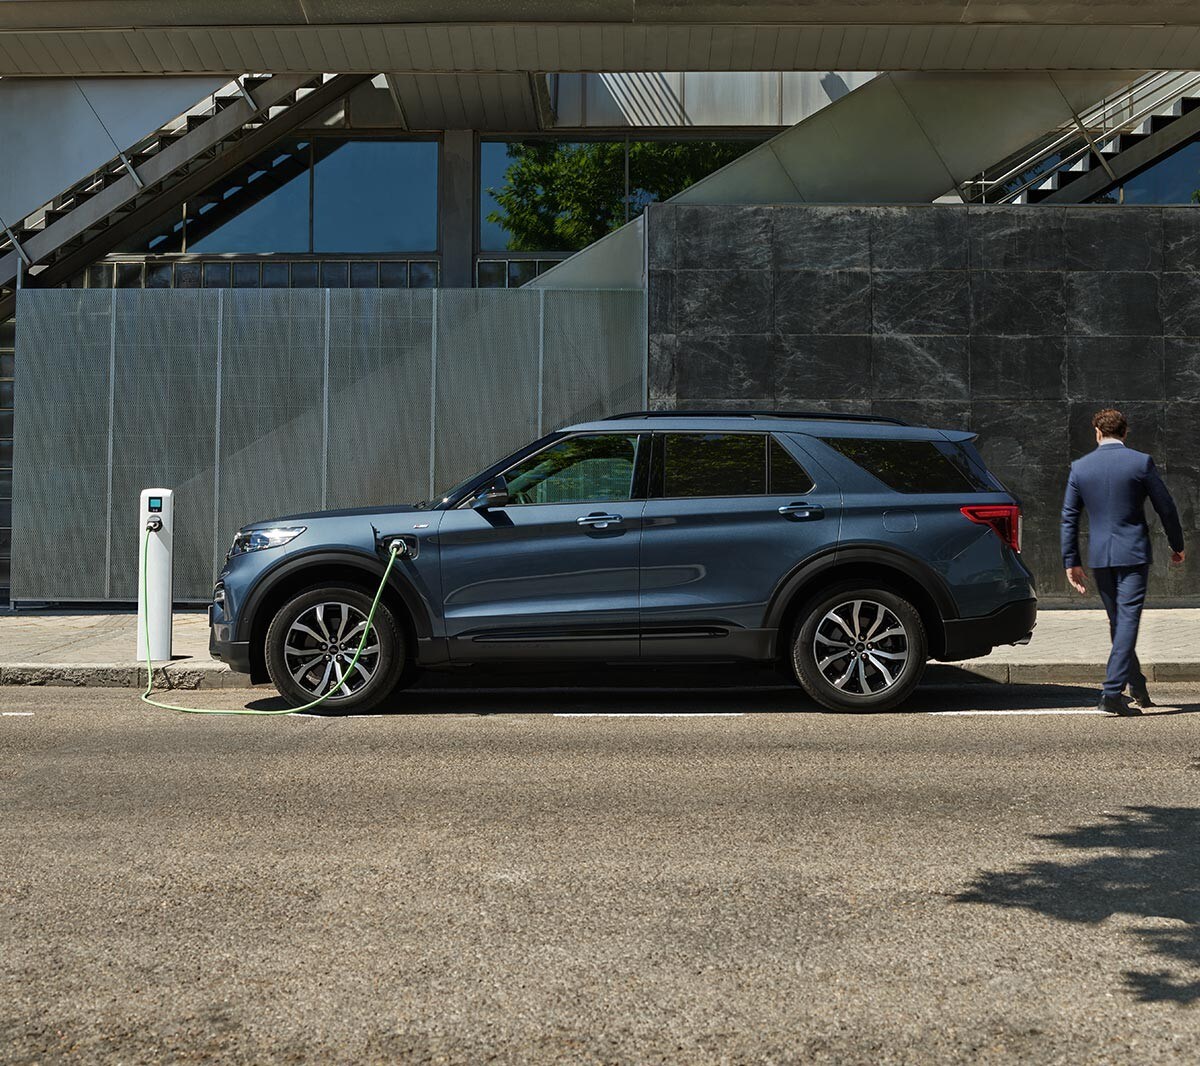 Sidebillede af Ford Explorer PHEV, der holder parkeret ved siden af ​​et ladepunktet med person, der går rundt